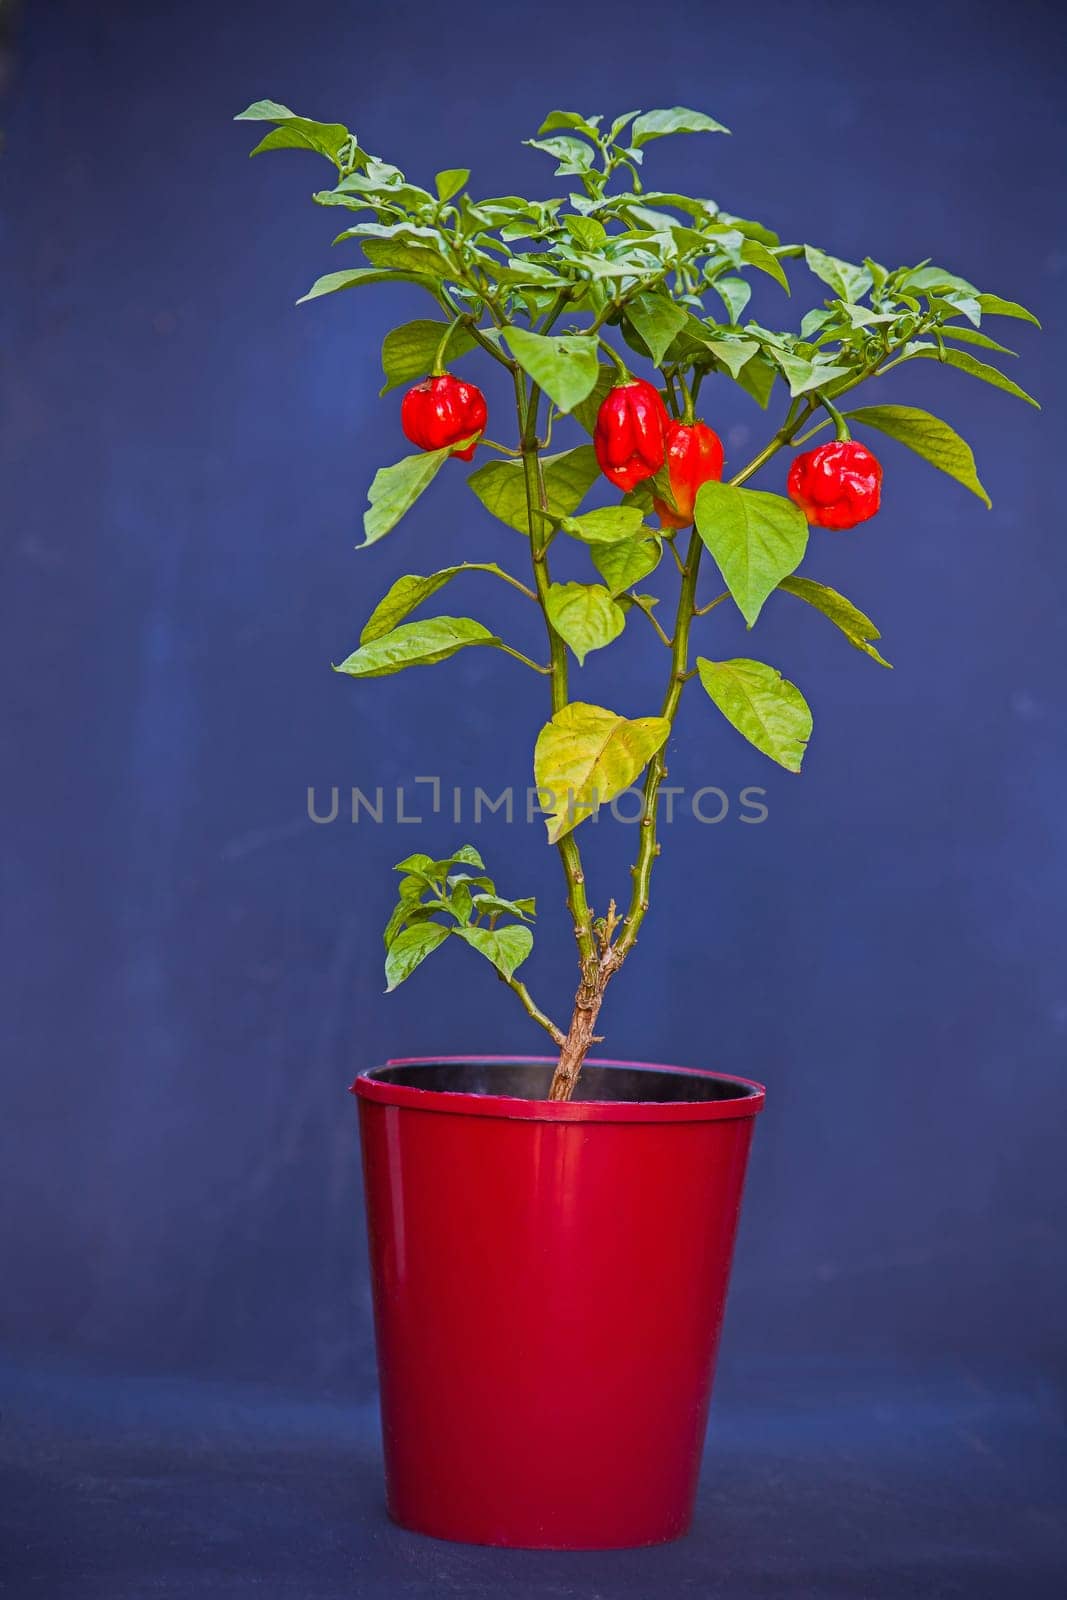 Carolina reaper chili Capsicum chinense plant 15379 by kobus_peche